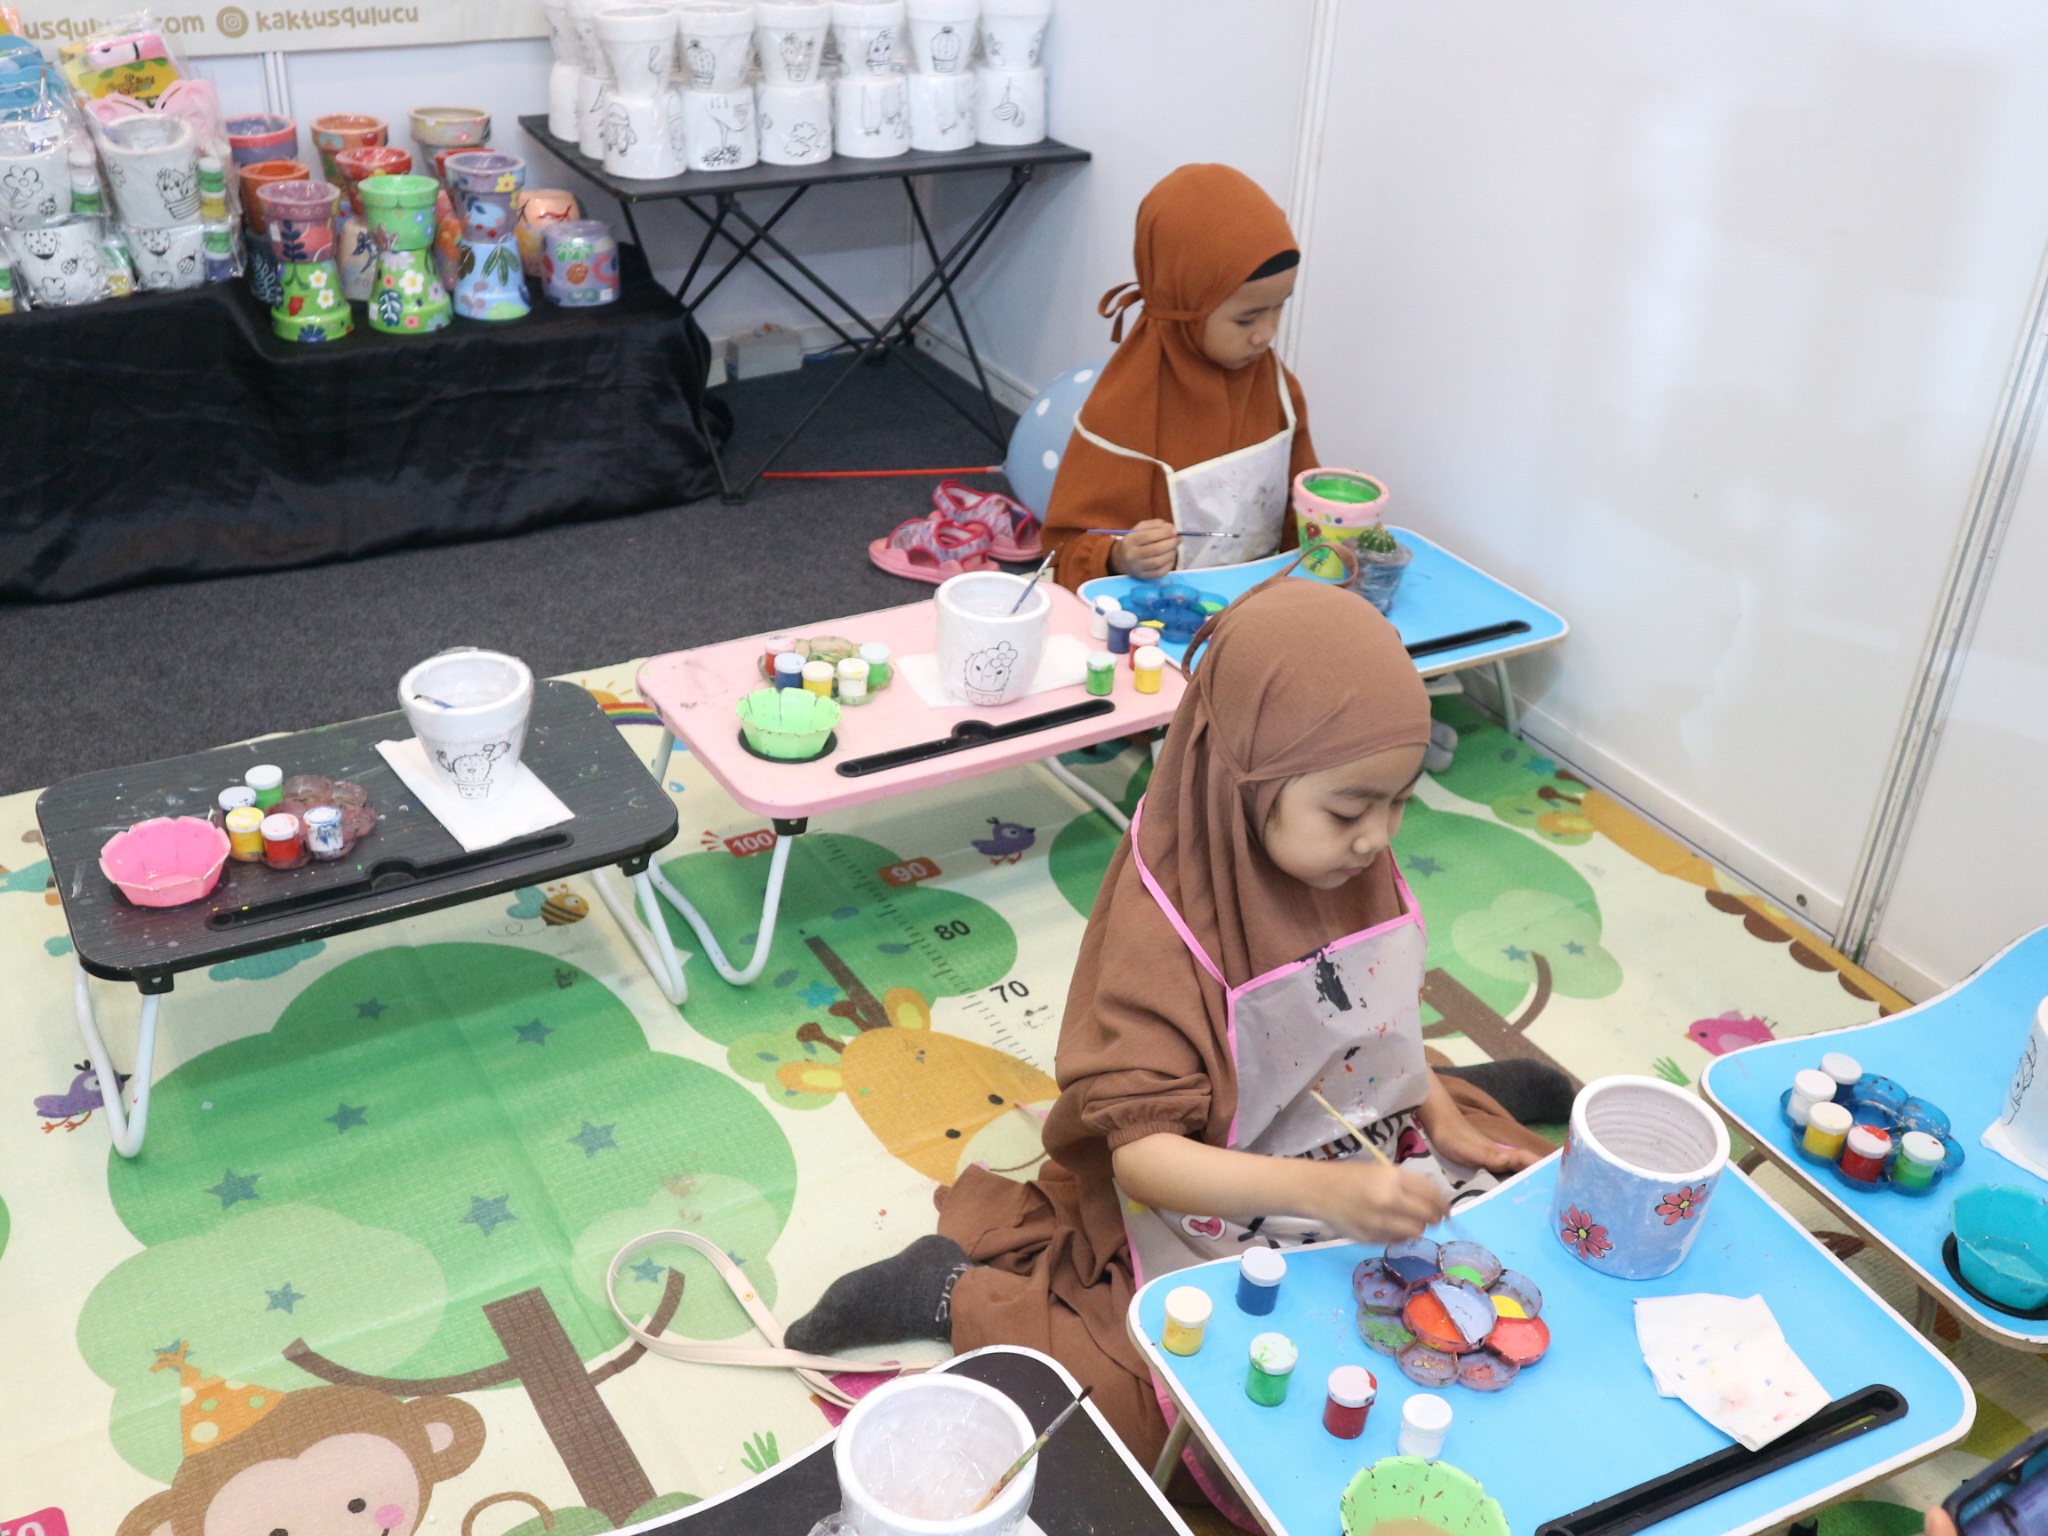 Pojok Booth Kaktusqulucu turut meramaikan gelaran Halal Fair-HIITS 2023 Tangerang